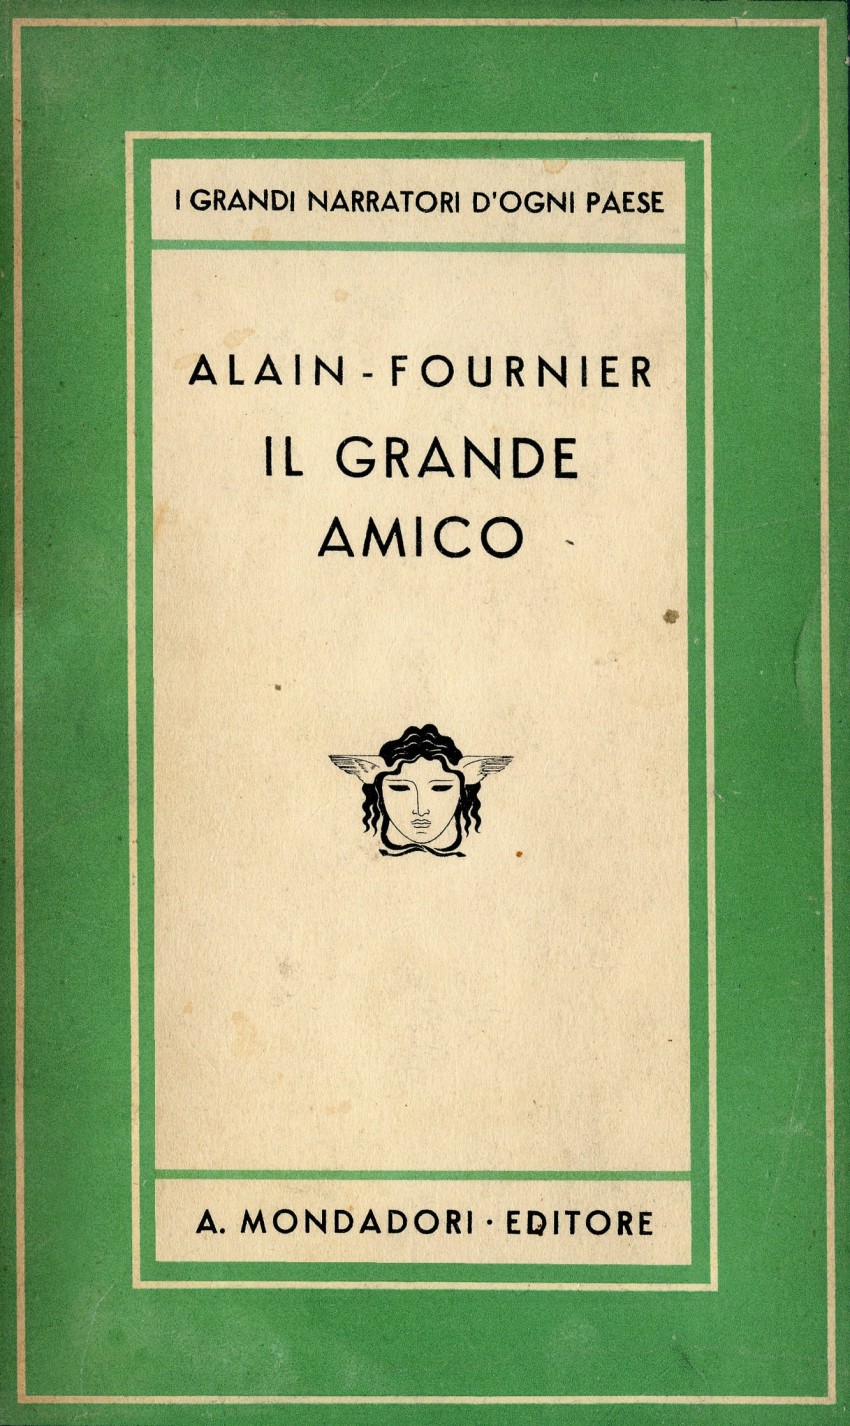 Il Grande amico di Alain-Fournier: primo titolo della collana Medusa (1933), dedicata alla narrativa straniera contemporanea. - Immagine concessa con licenza CC BY-SA 4.0